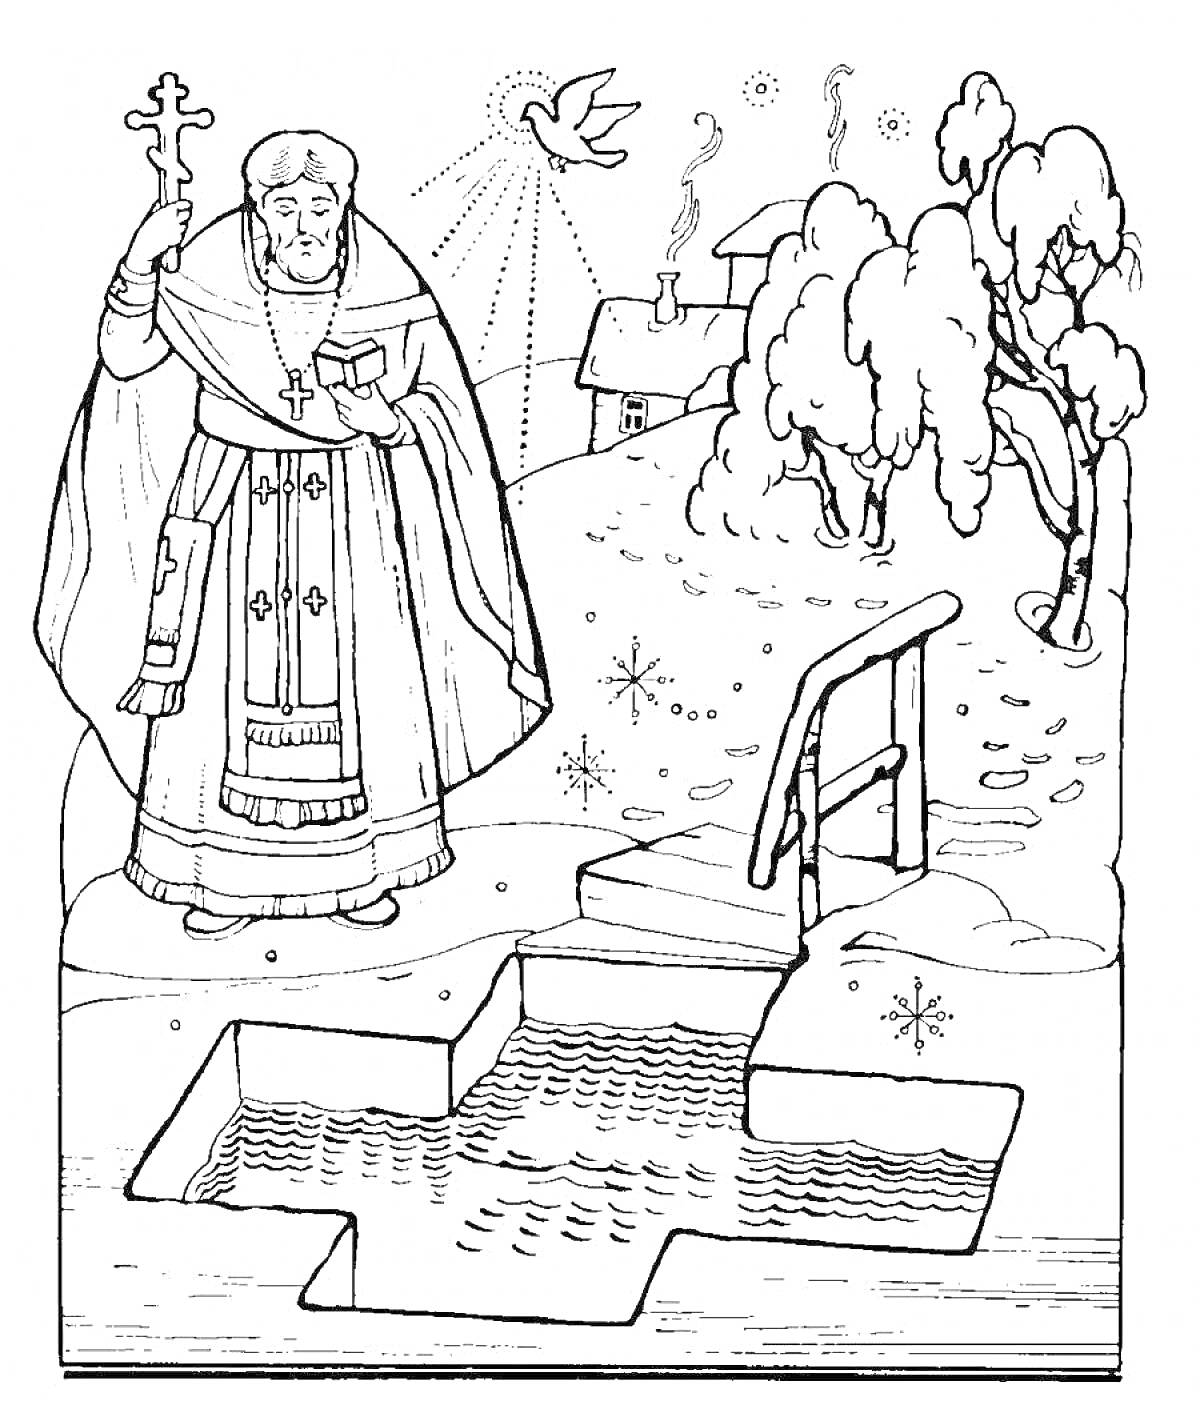 Священник с крестом, голубь, звезды, прорубь в форме креста, лестница, зима, деревья в снегу, деревенский дом с трубами